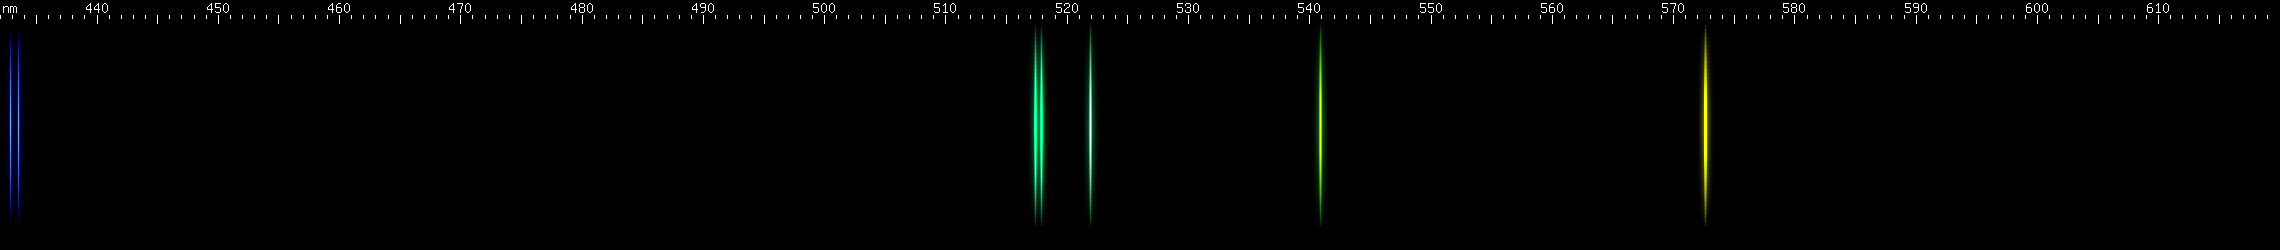 Spectral lines of Californium.